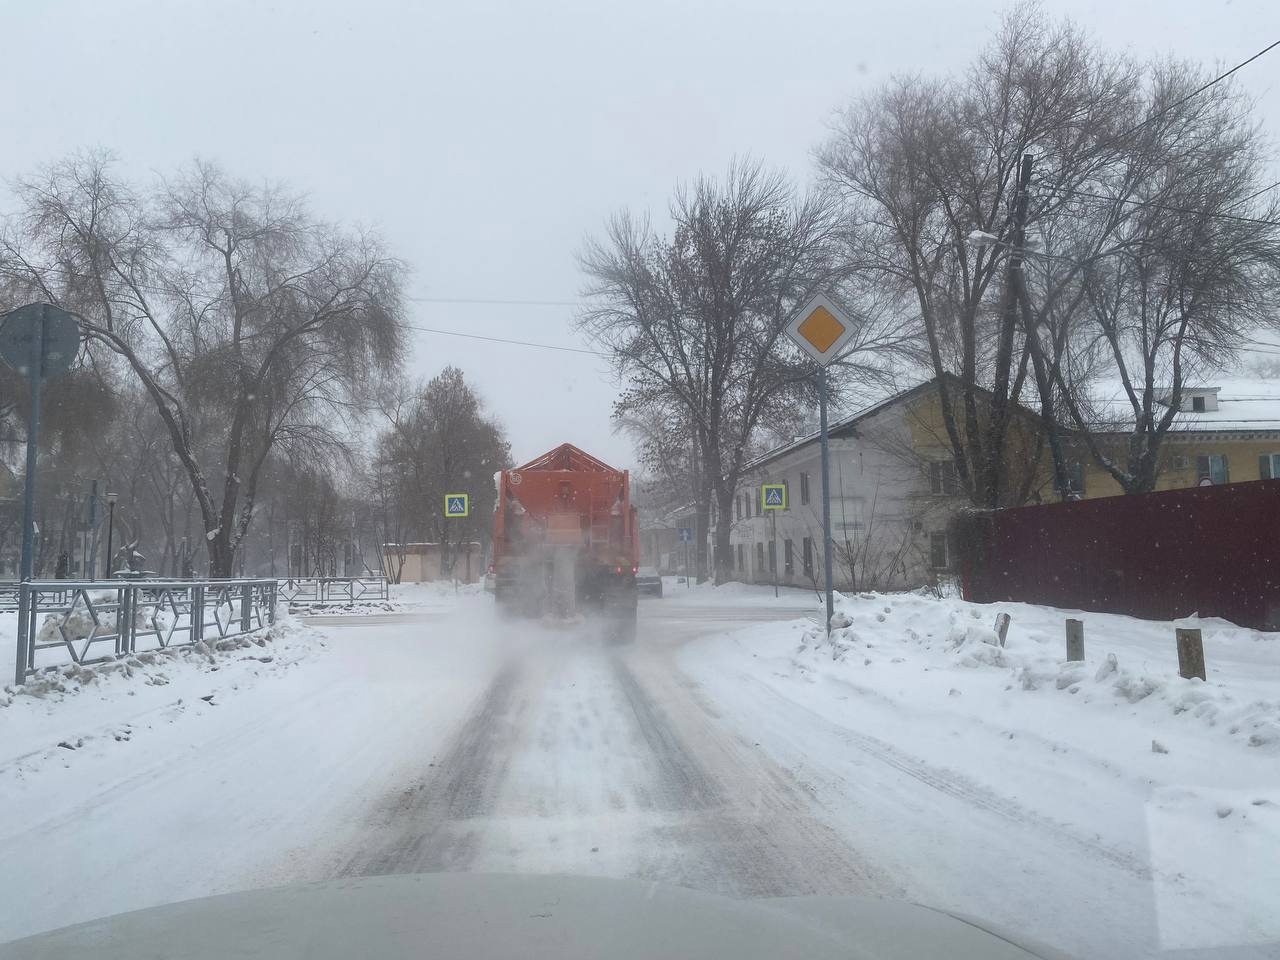 Перед профильными службами Самары поставлена задача по наращиванию сил и средств для оперативной расчистки снега на территории города